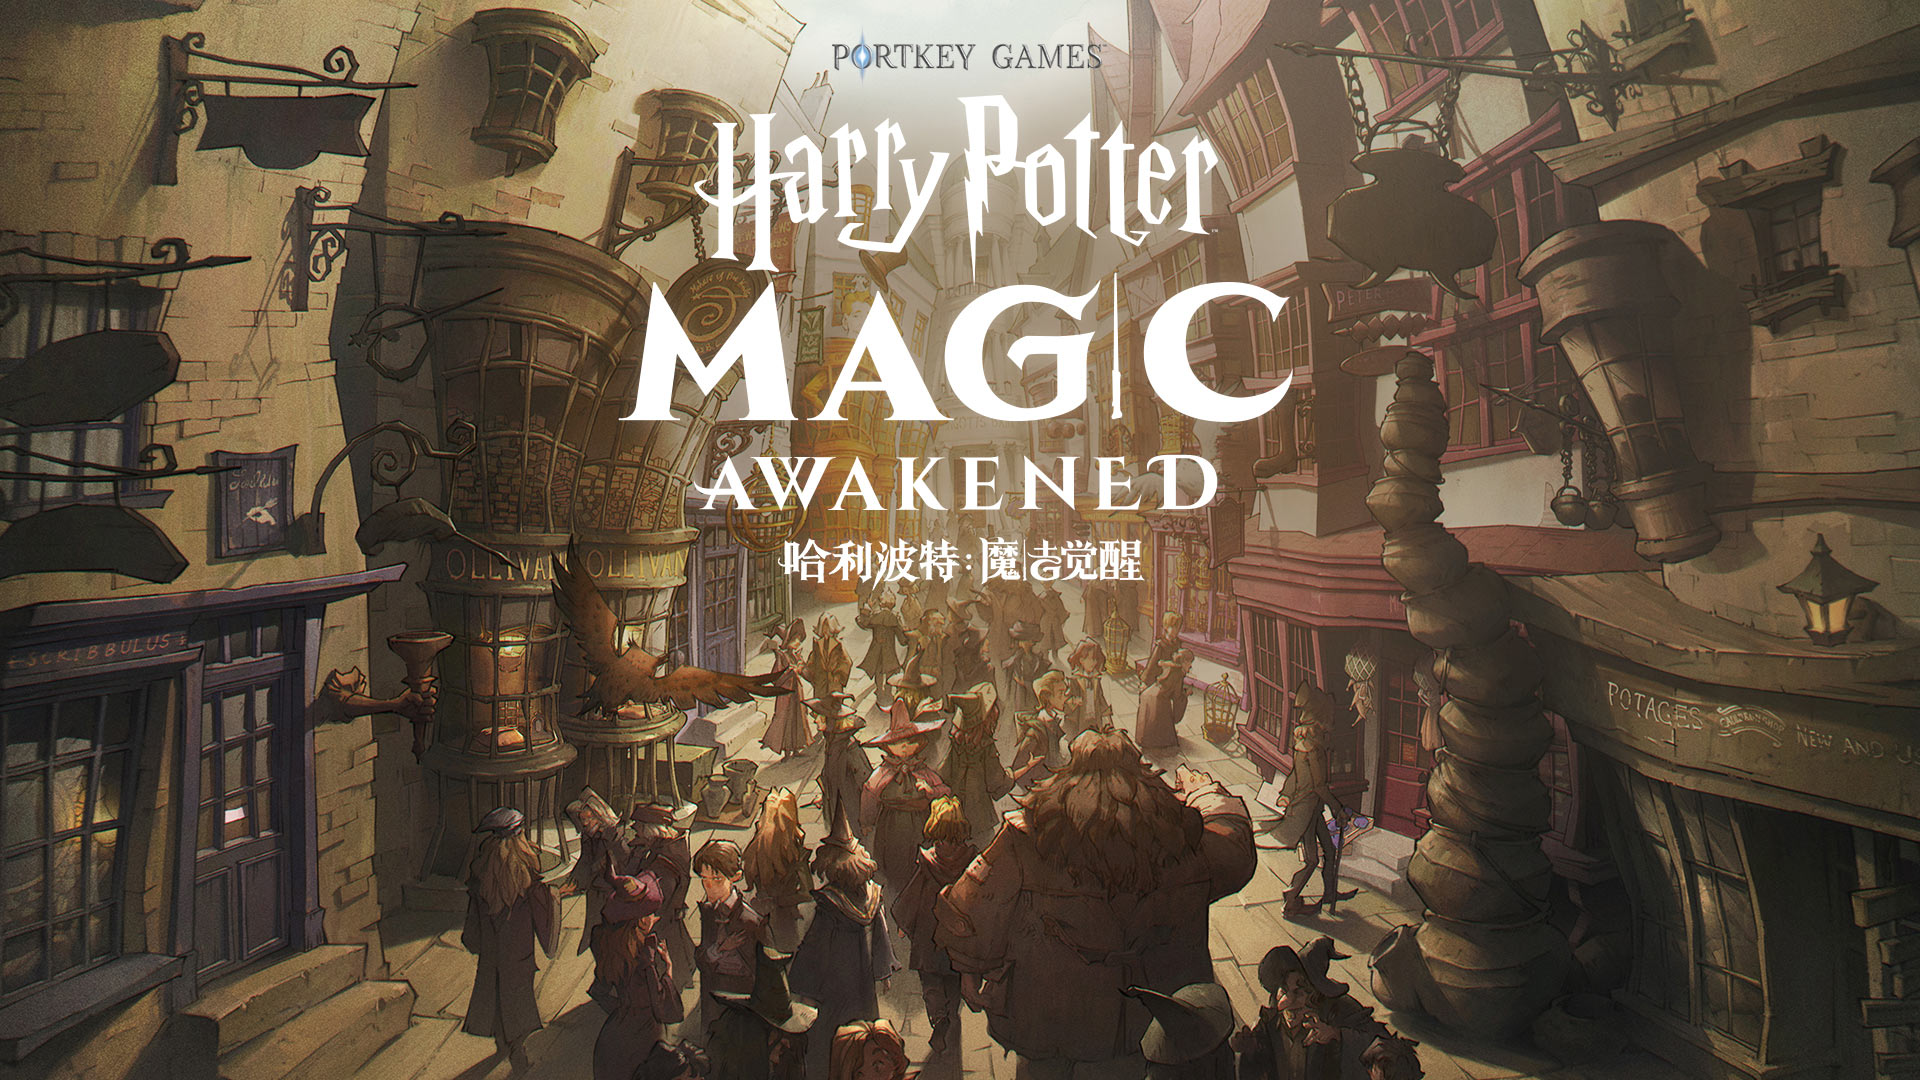 华纳兄弟互动娱乐公司与网易宣布联合开发《哈利波特：魔法觉醒》，即将来到中国